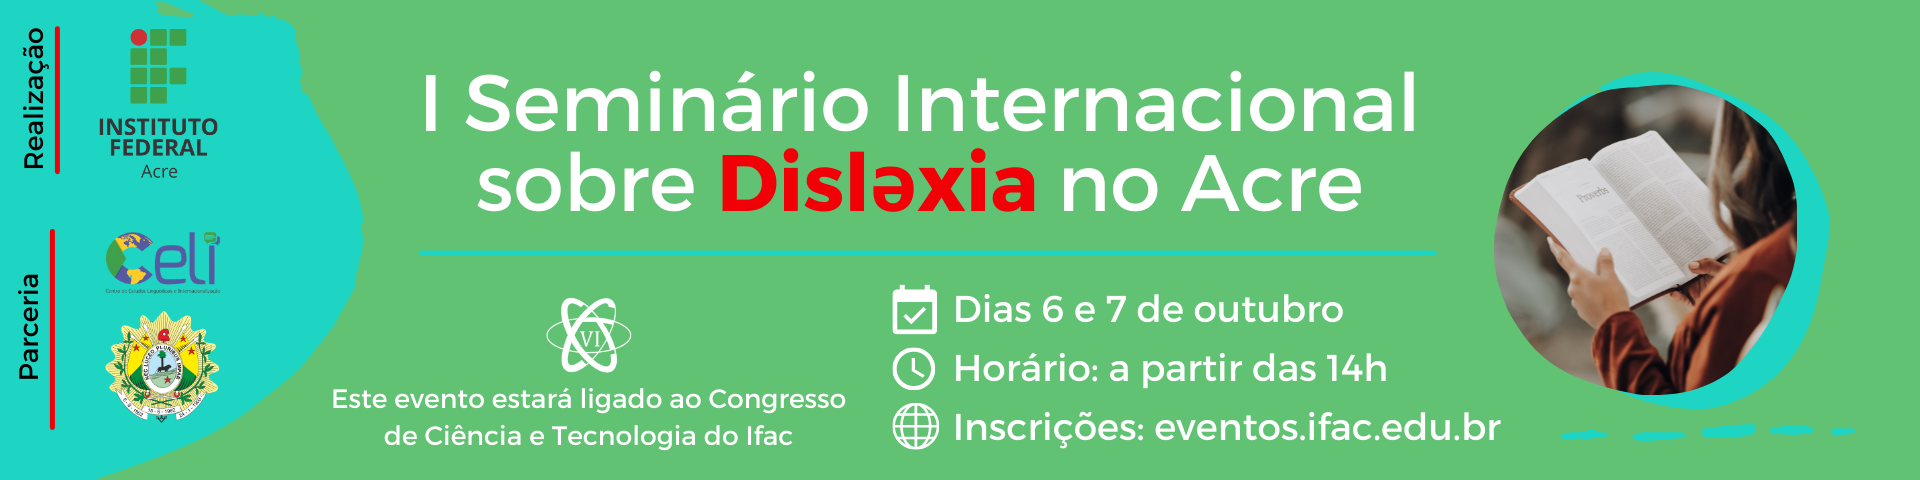 banner do I Seminário Internacional sobre Dislexia no Acre